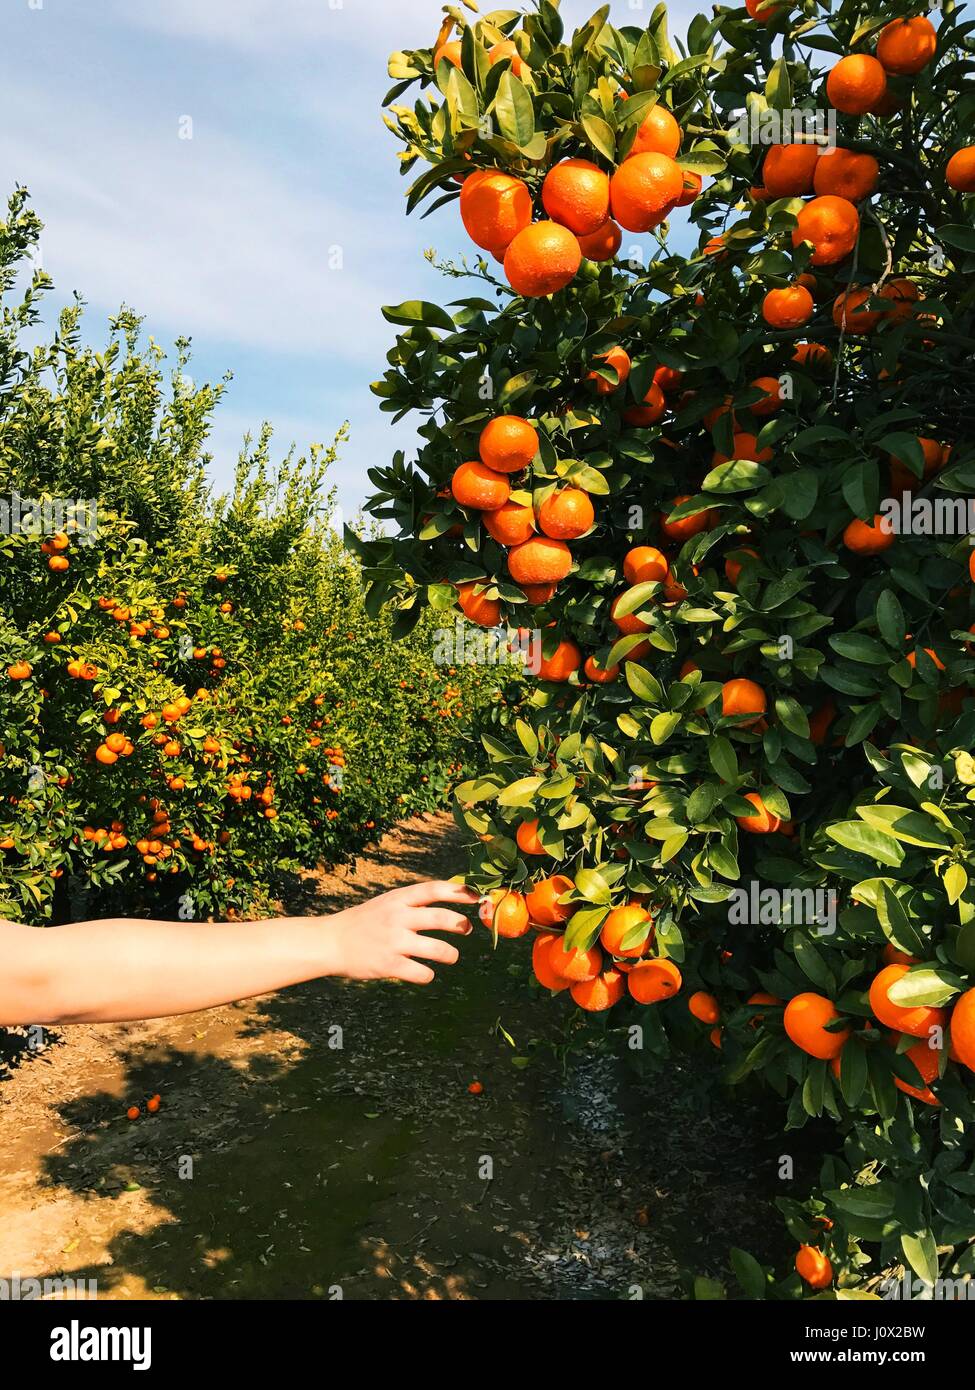 Main de garçon cueillant une orange d'un arbre, Californie, États-Unis Banque D'Images